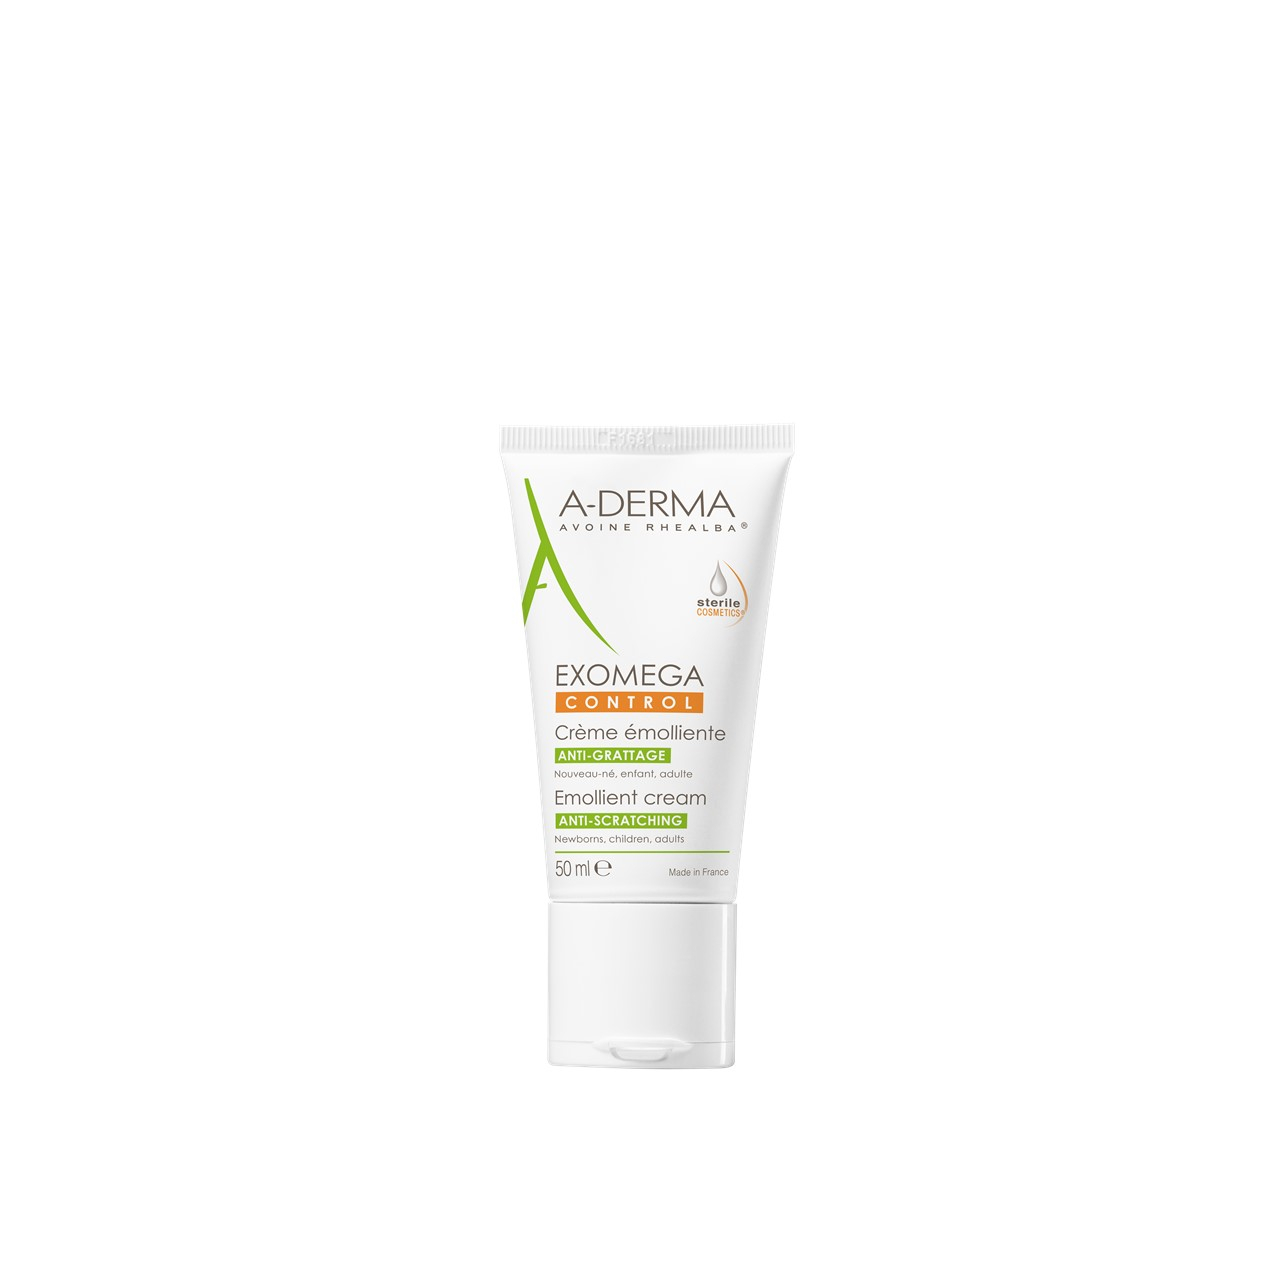 A-Derma Exomega Control Emollient Cream 50ml (1.69fl oz)